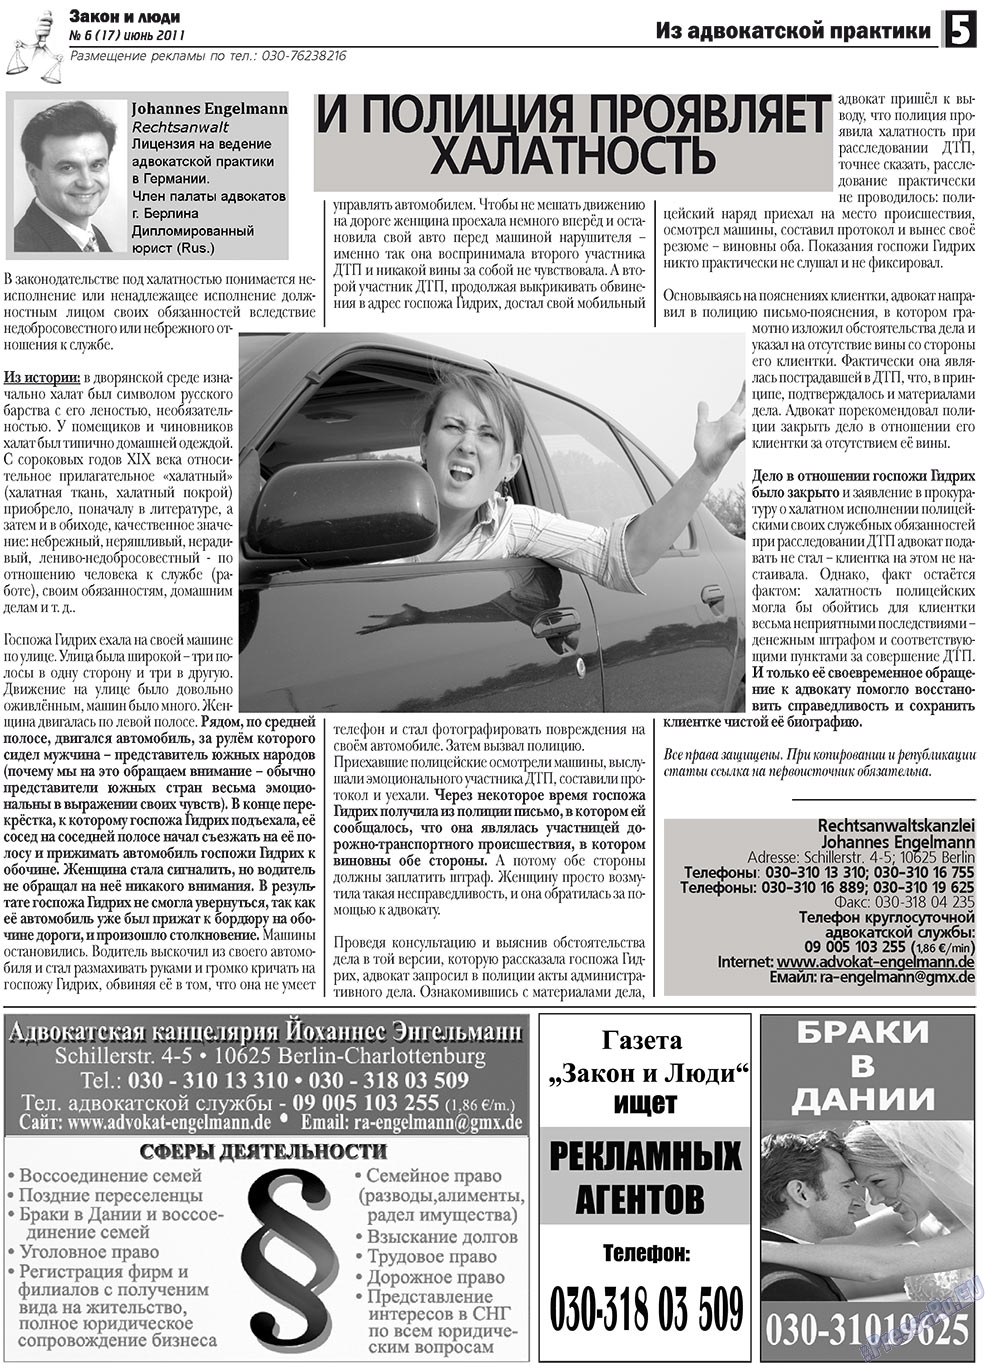 Закон и люди, газета. 2011 №6 стр.5